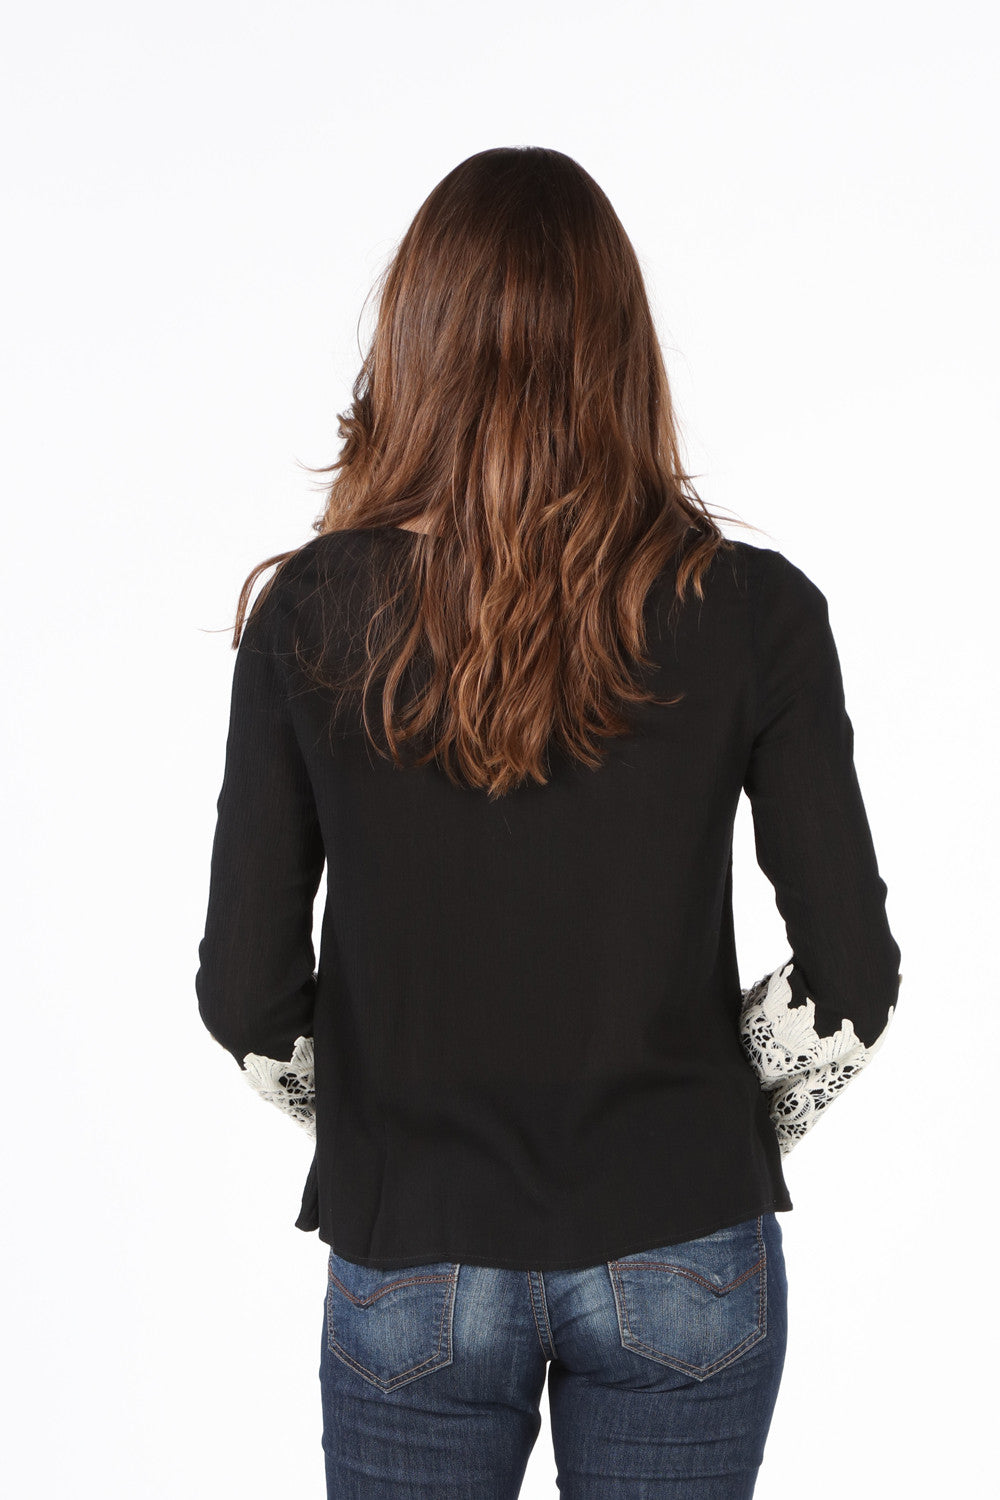 LIV1018 Black Lace Tie Front with Crochet Trim